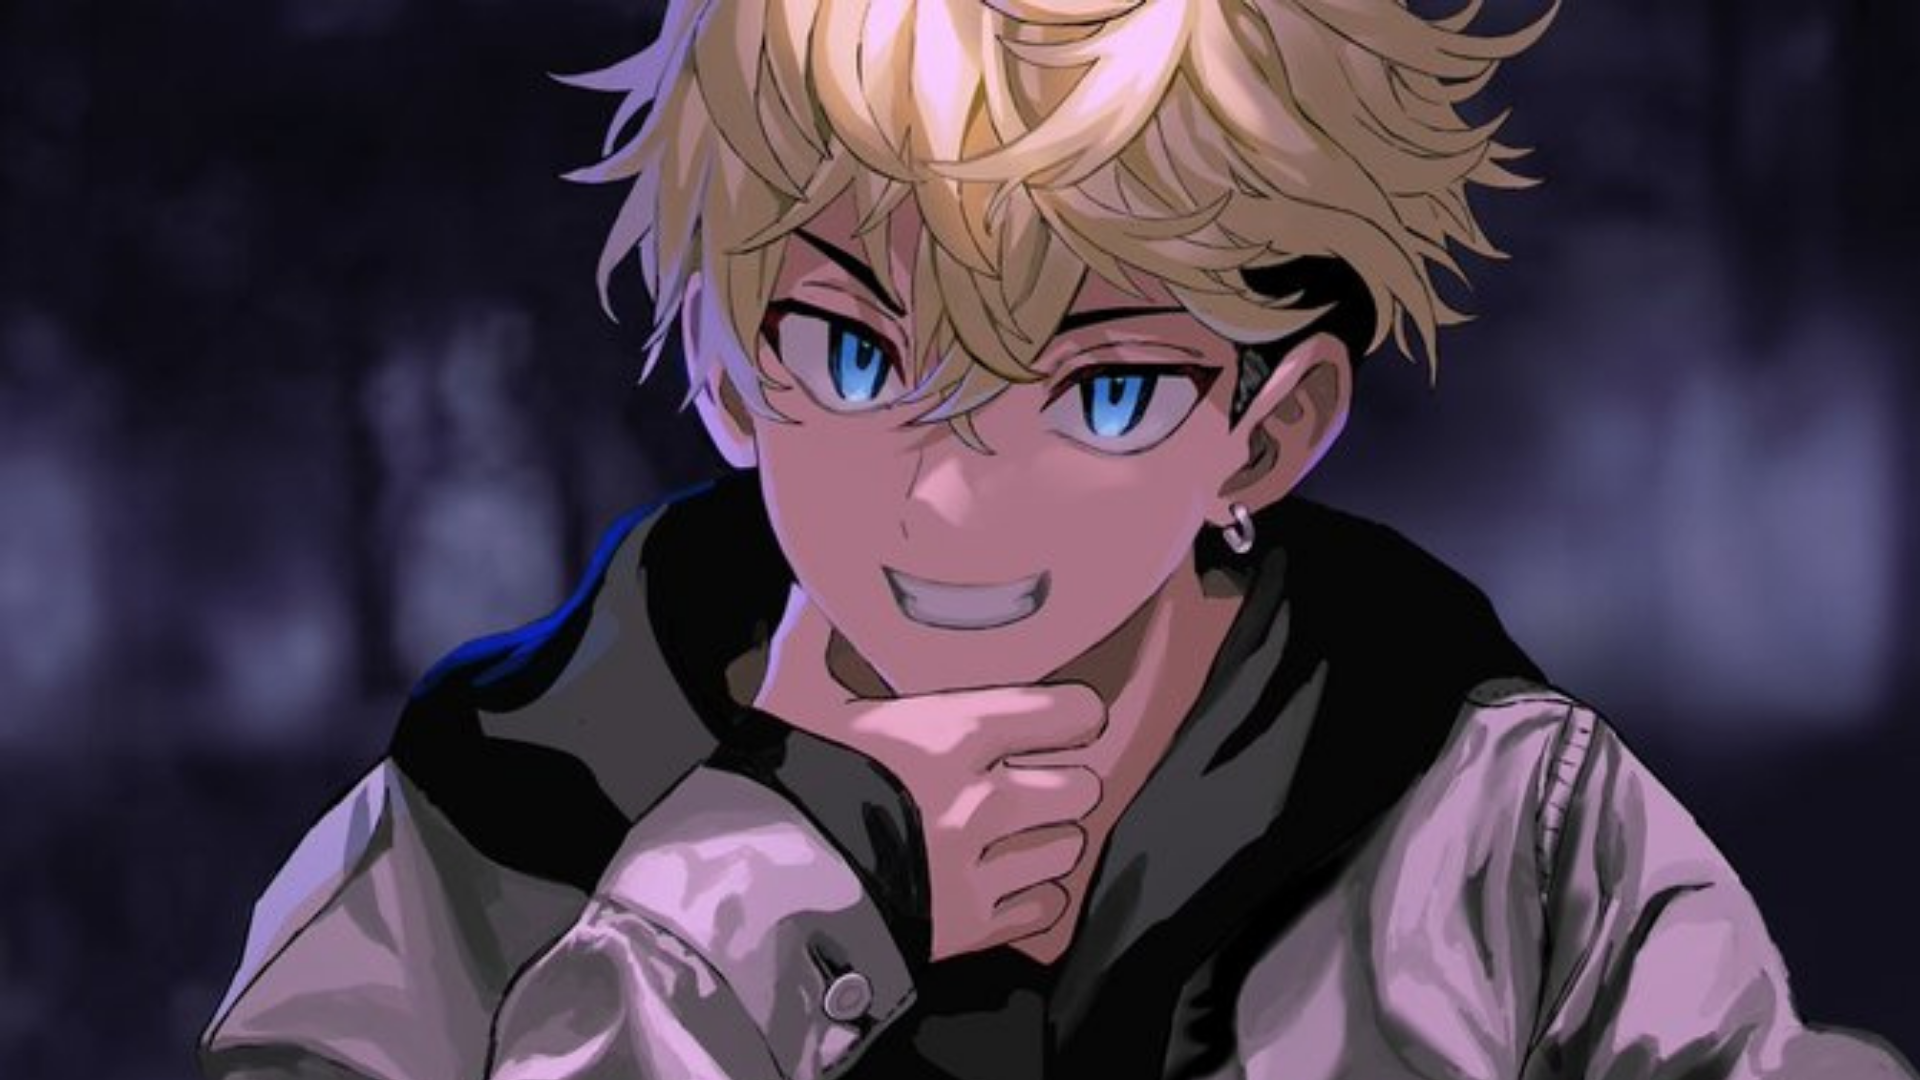 Top 10 Anime Boys With Blonde Hair [Best List]